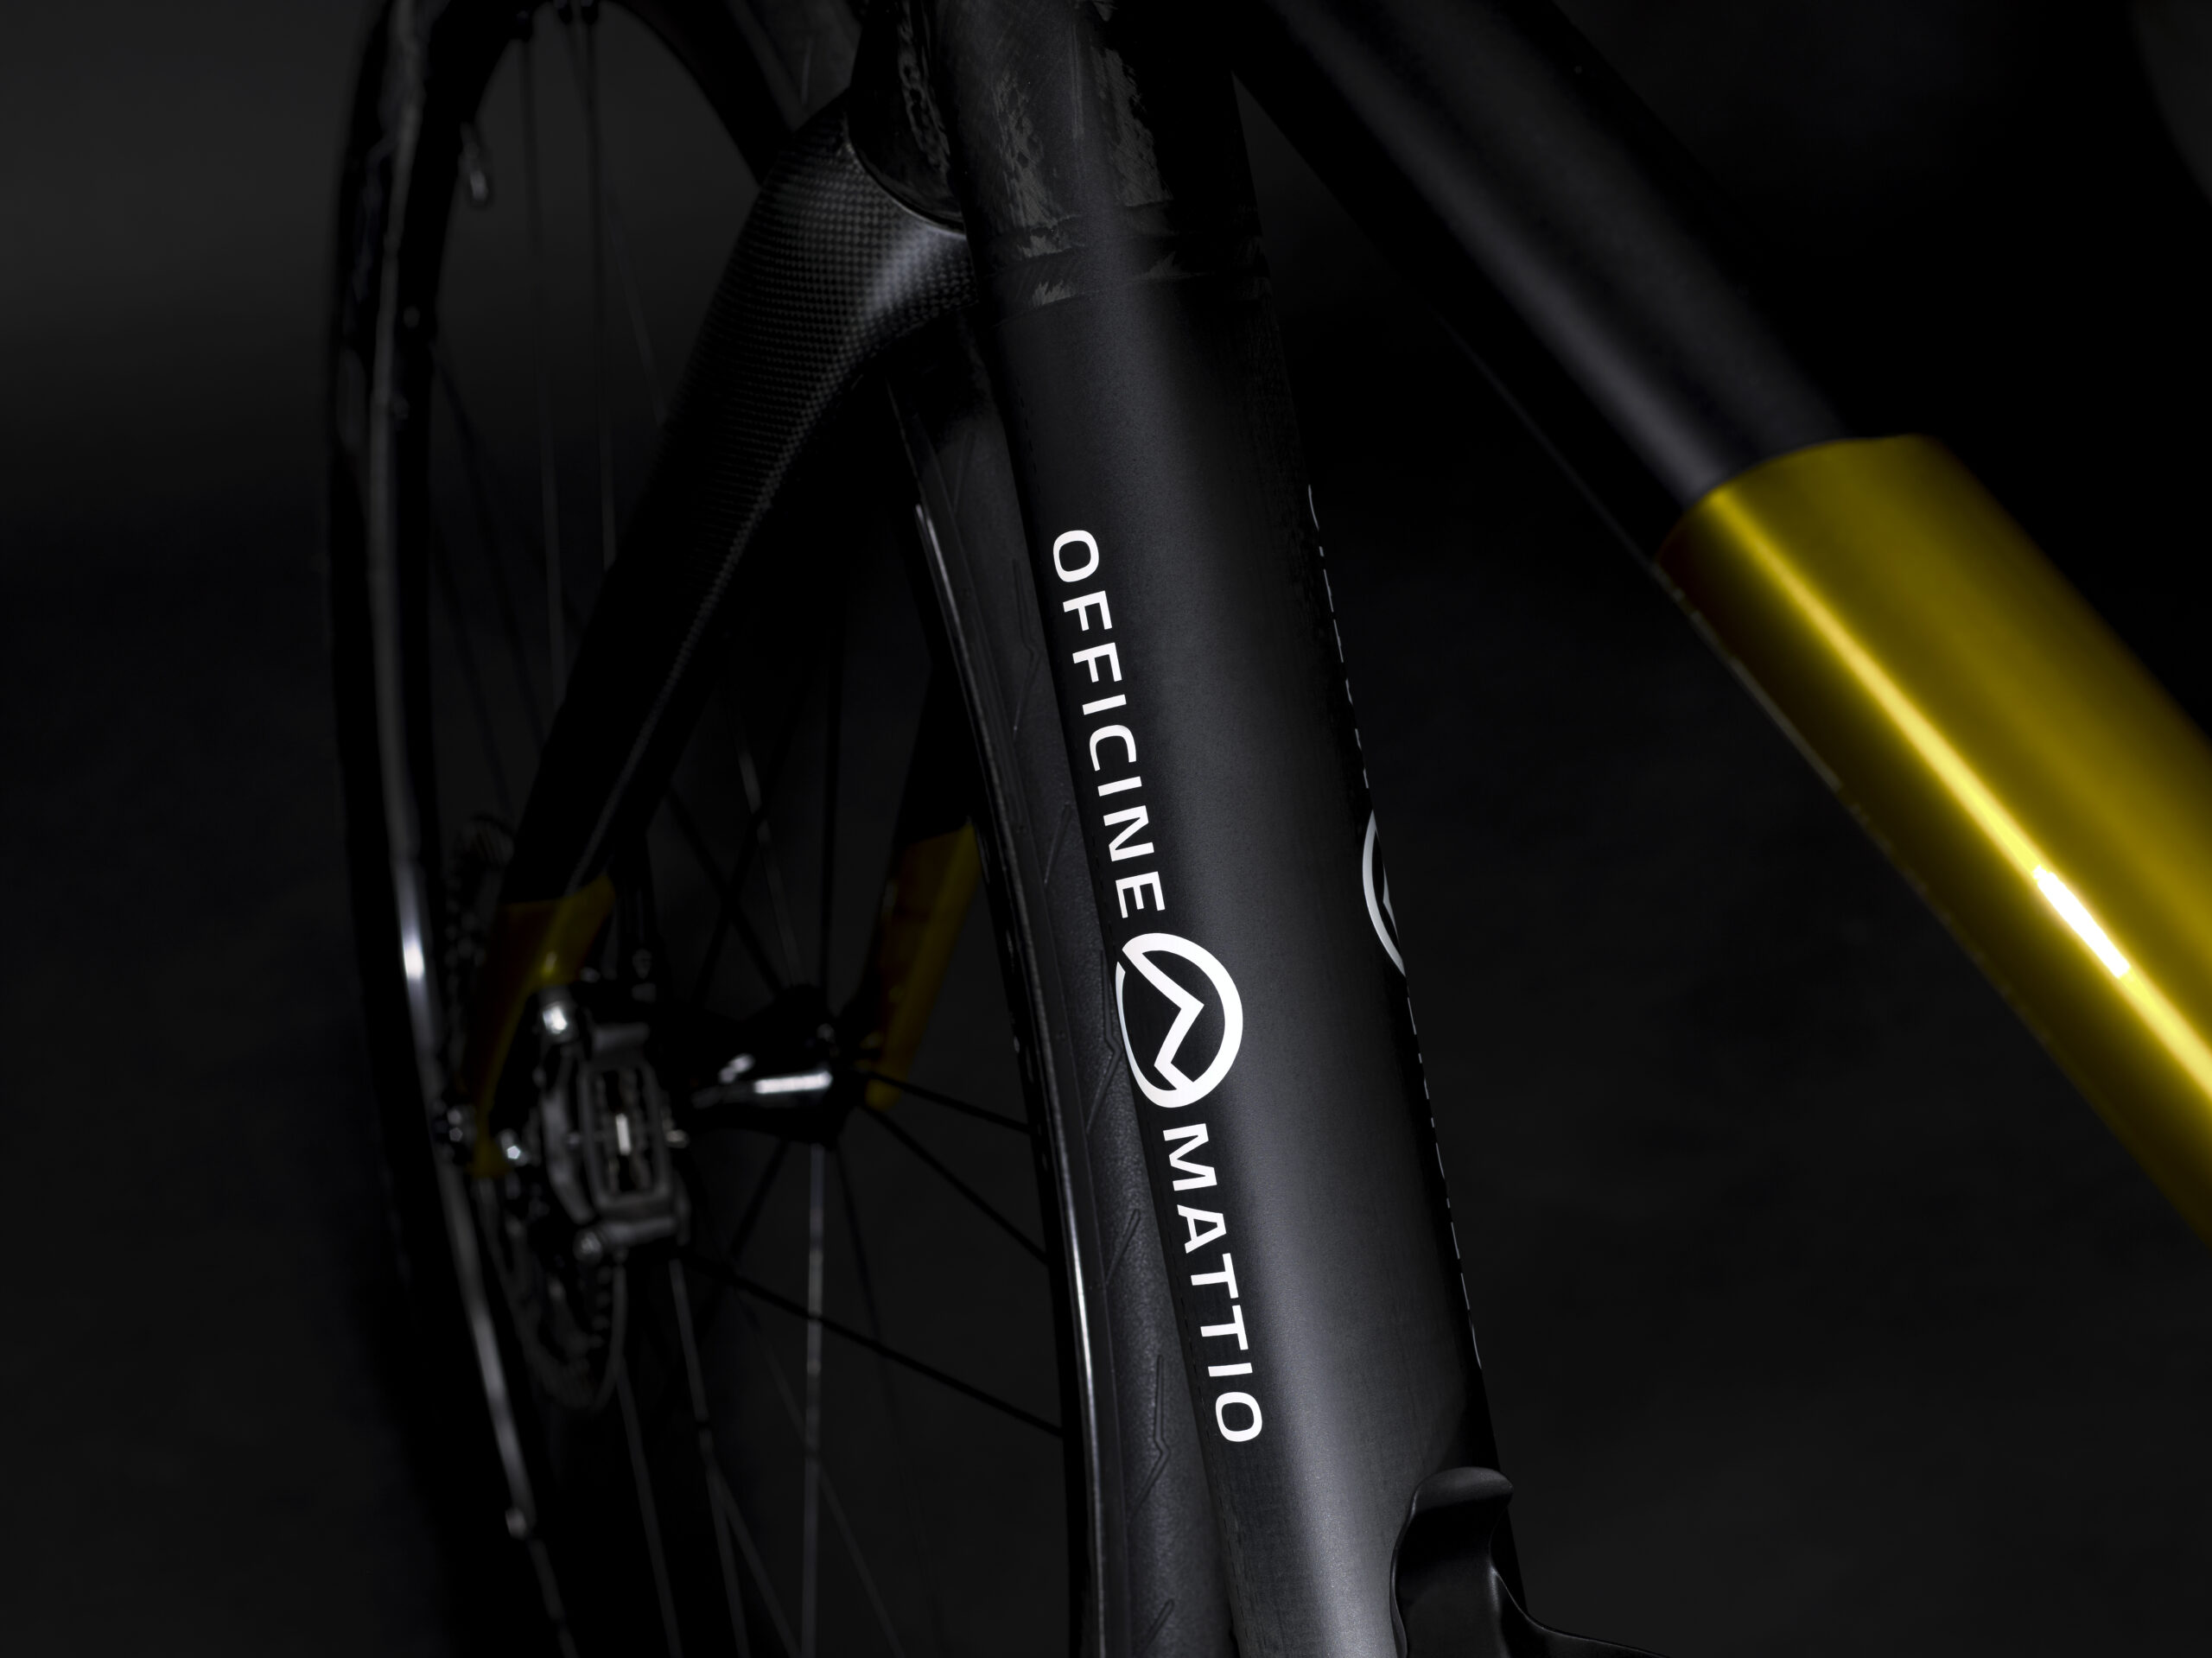 Bicicletta Officine Mattio modello SL X, produzione made in italy fotografia dettaglio logo e telaio